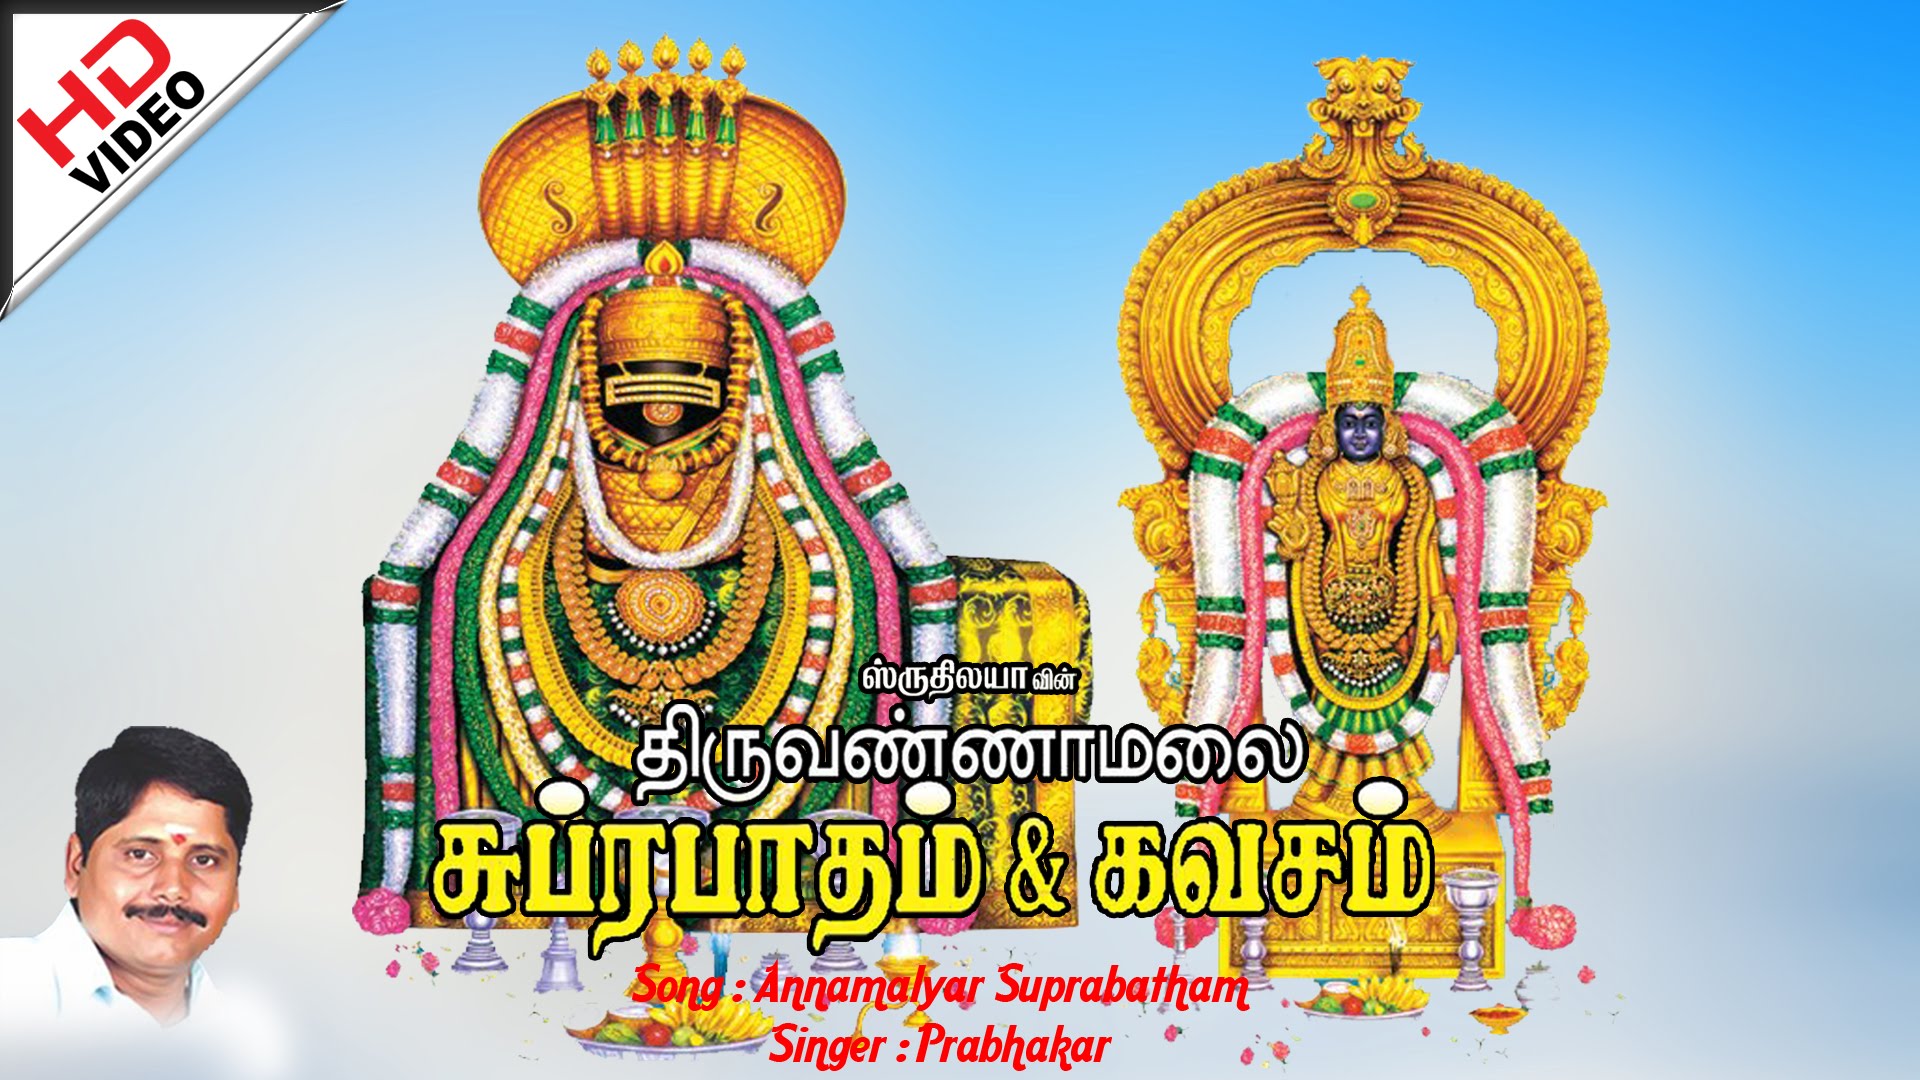 Thiruvannamalai Image E See Original Photos